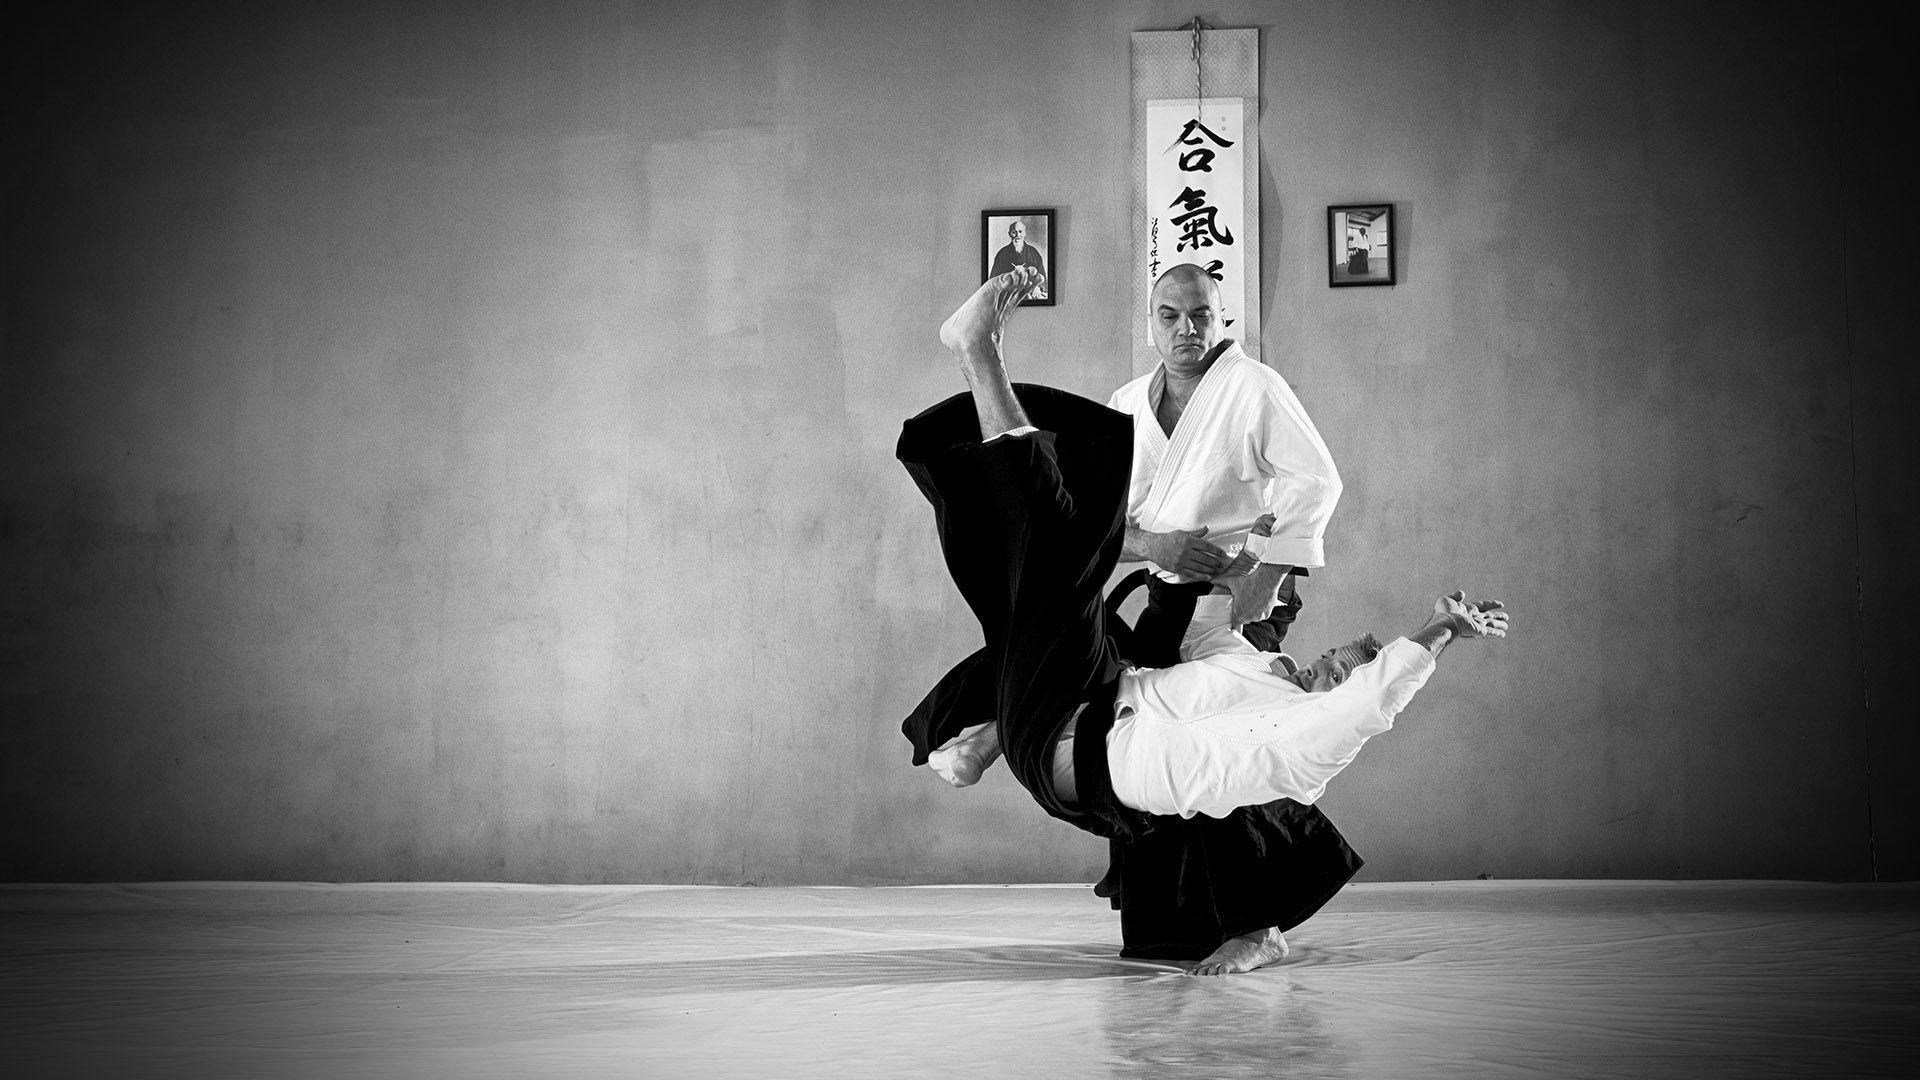 aikido art wallpaper